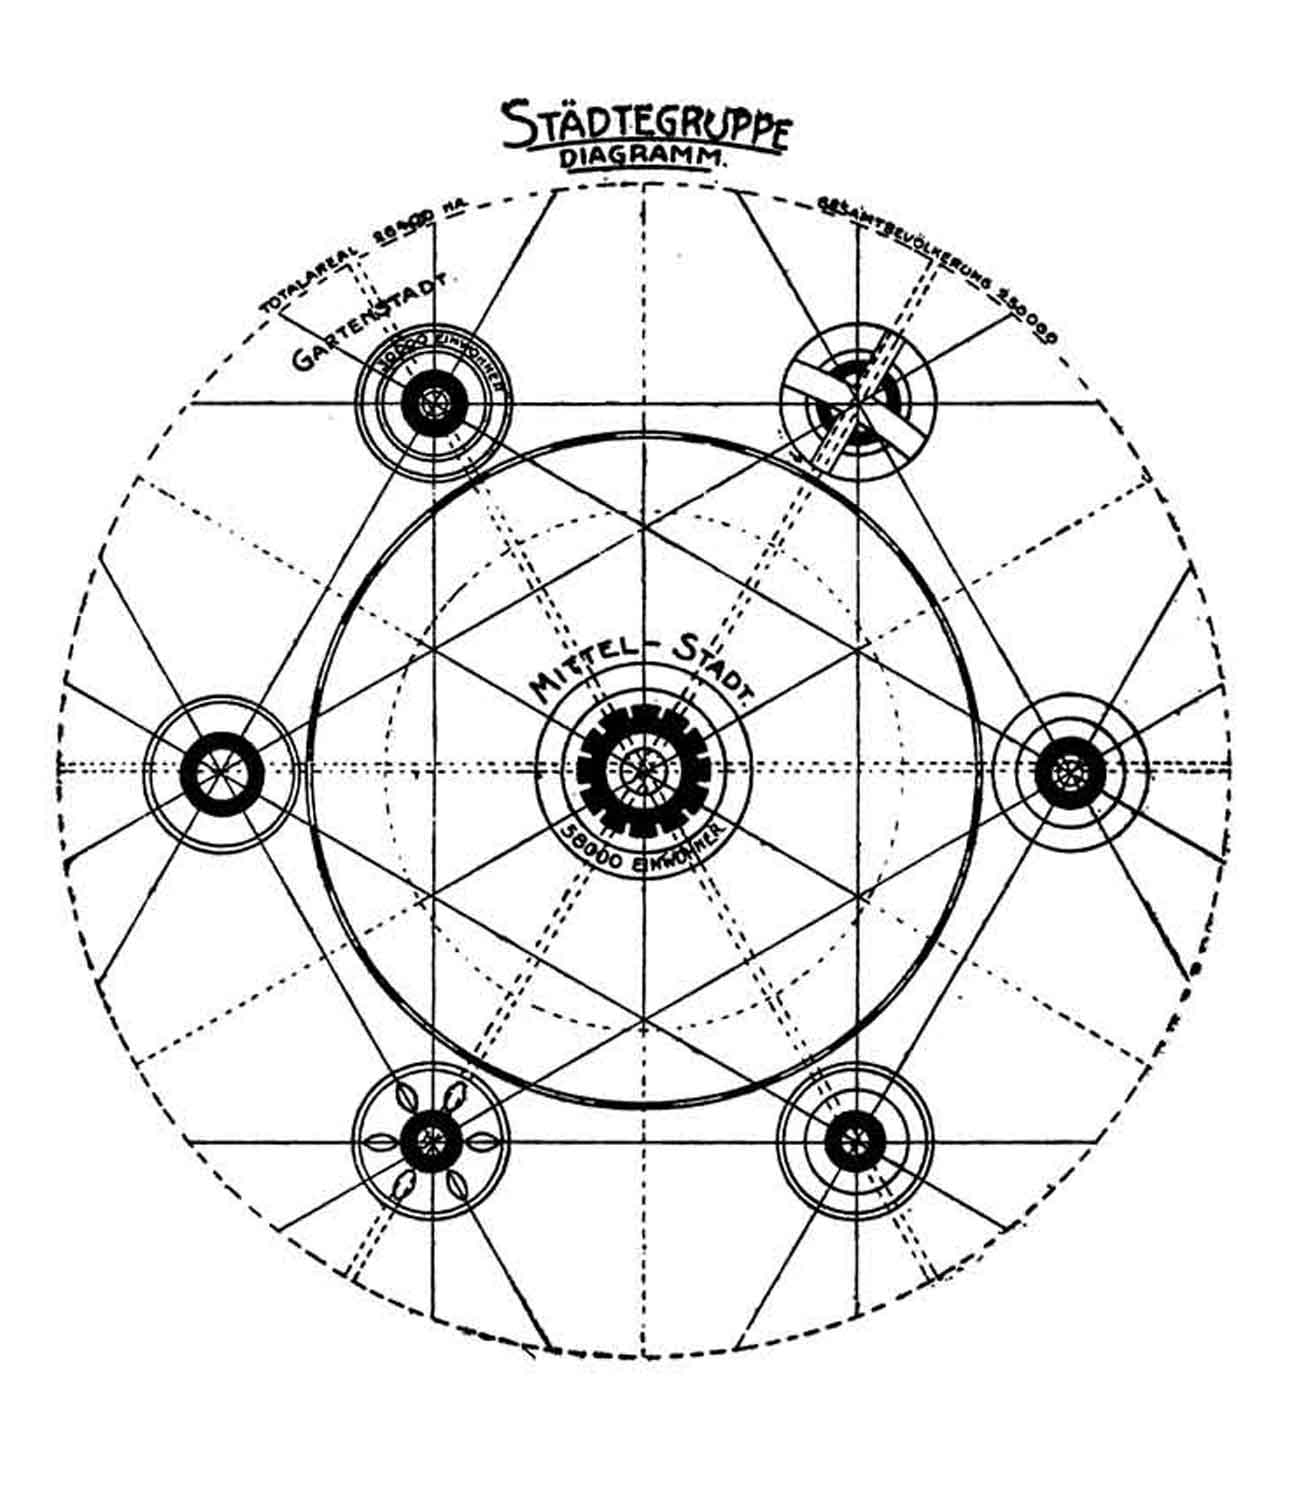 Zeichnung, schwarz-weiß: Sieben runde grafische Elemente, eines in der Mitte, die anderen kreisförmig darum angeordnet, alle Elemente sind mit Linien verbunden.